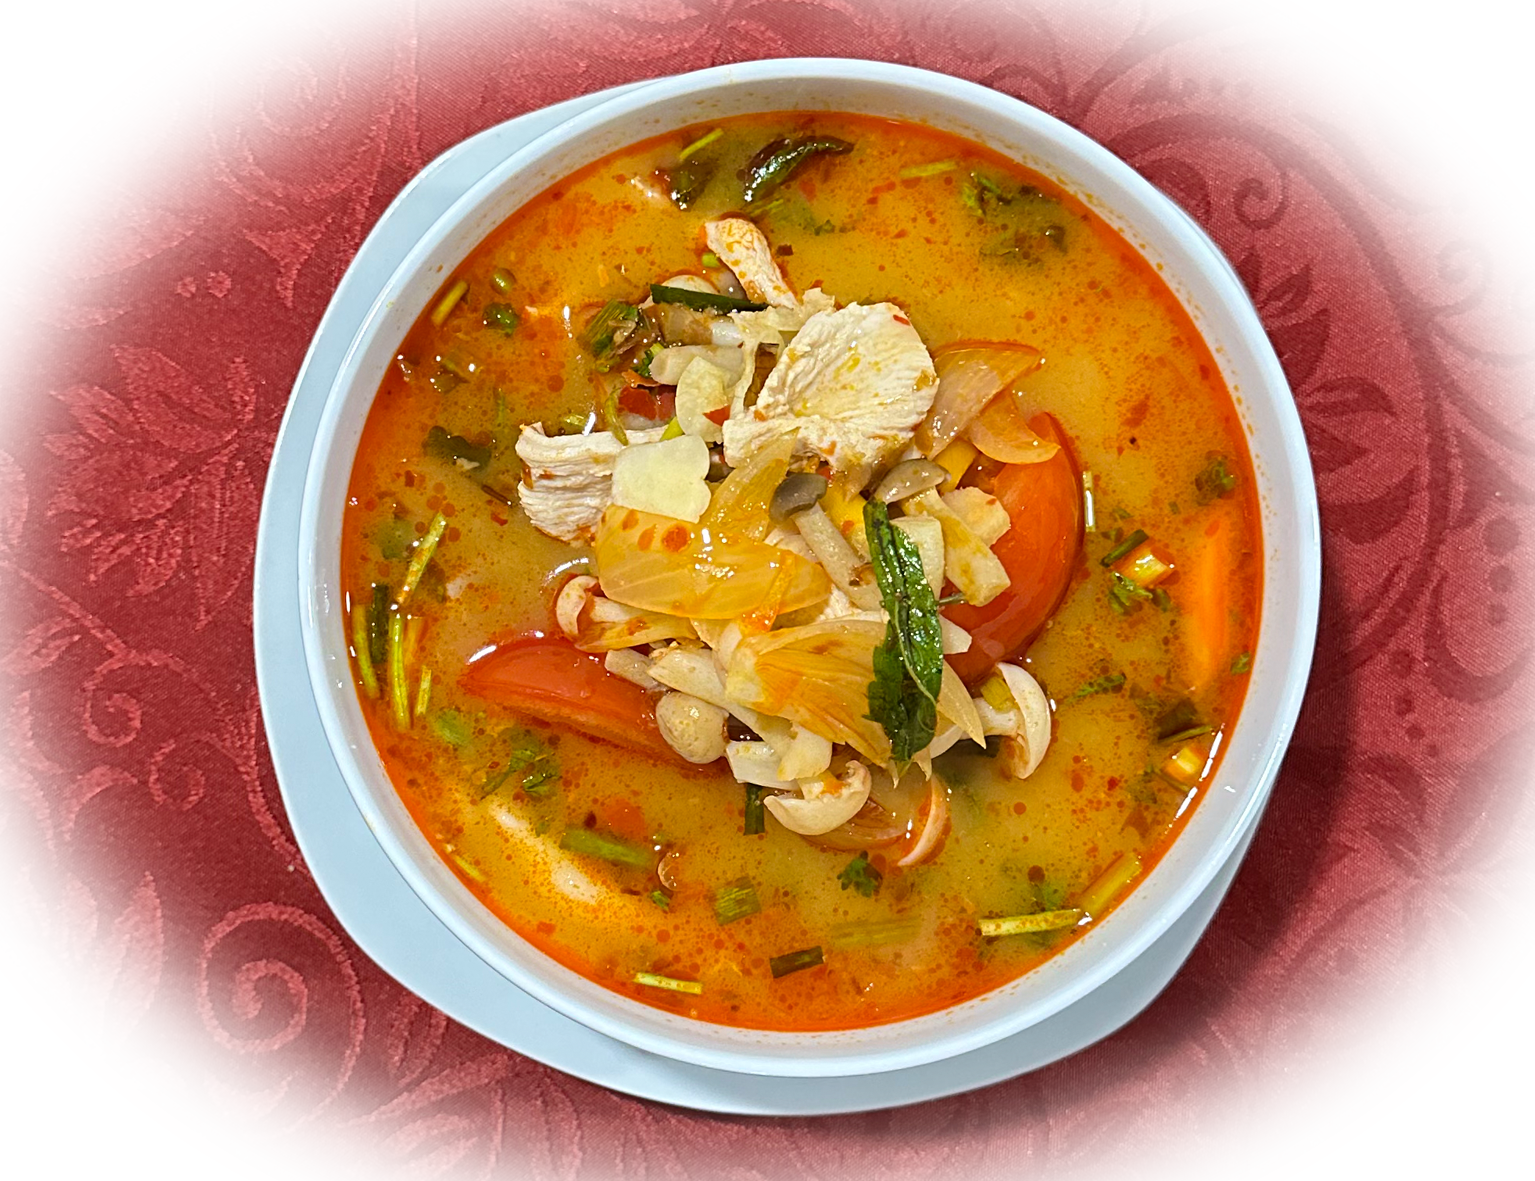 Tom Yum Suppe ist eine scharfe und saure thailändische Suppe, die oft als Vorspeise serviert wird. S